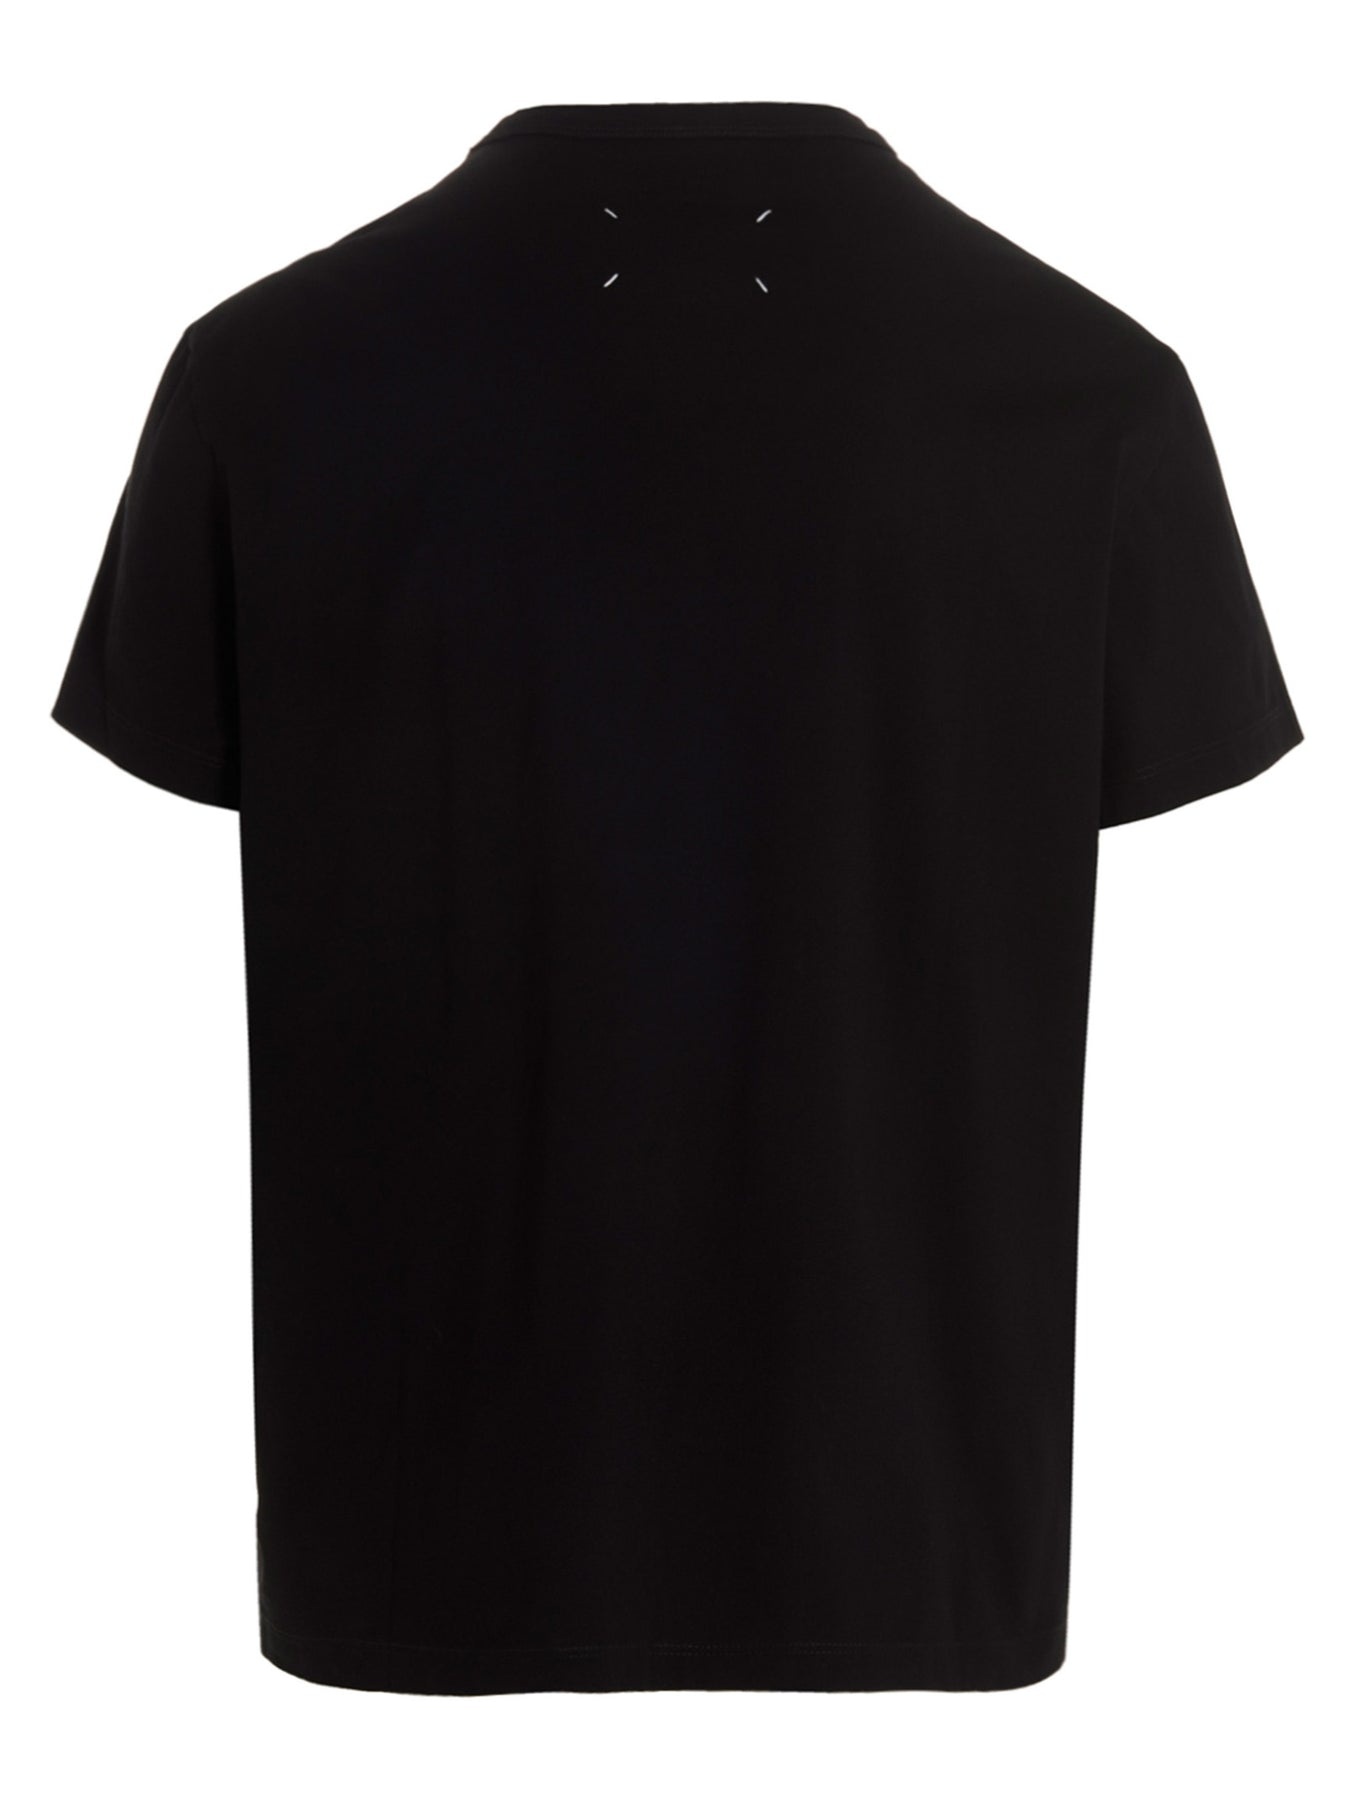 Maison Margiela Paris T-Shirt Black - 2